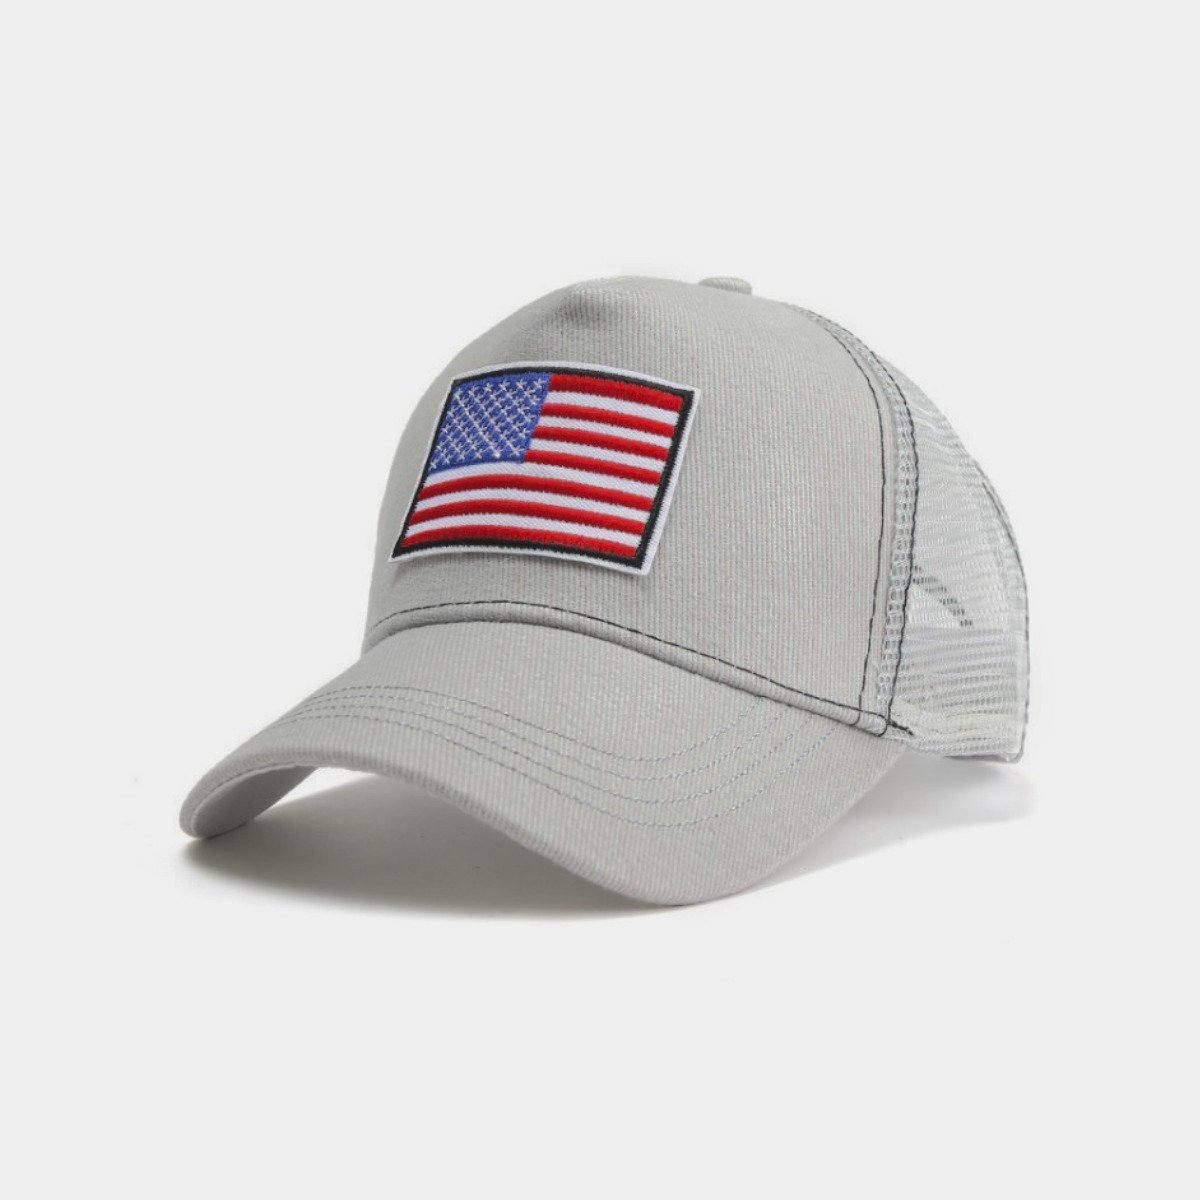 American Flag Trucker Hat With Adjustable Strap - Grey-RWB Flag